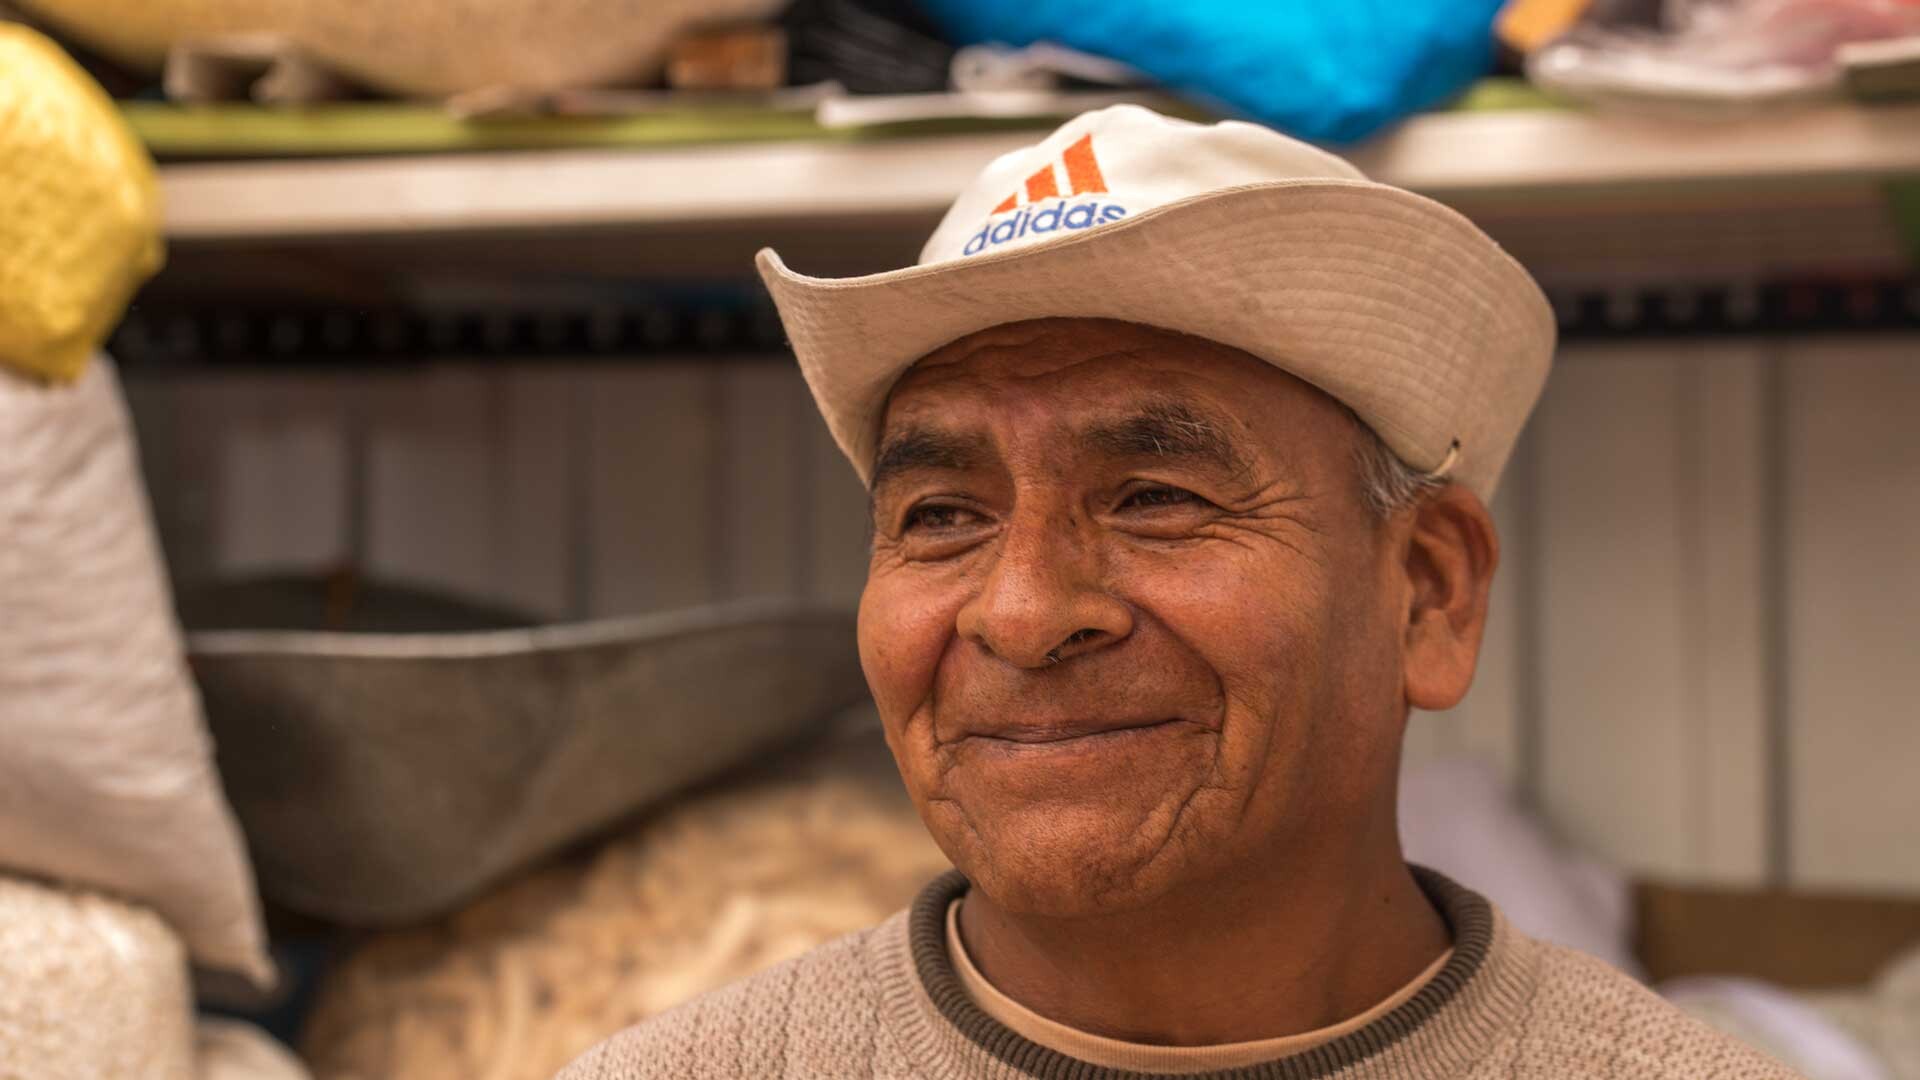 FARBIGER GEHT'S KAUM NOCH - Peru 2016 - Teil 7: Kleine Menschen